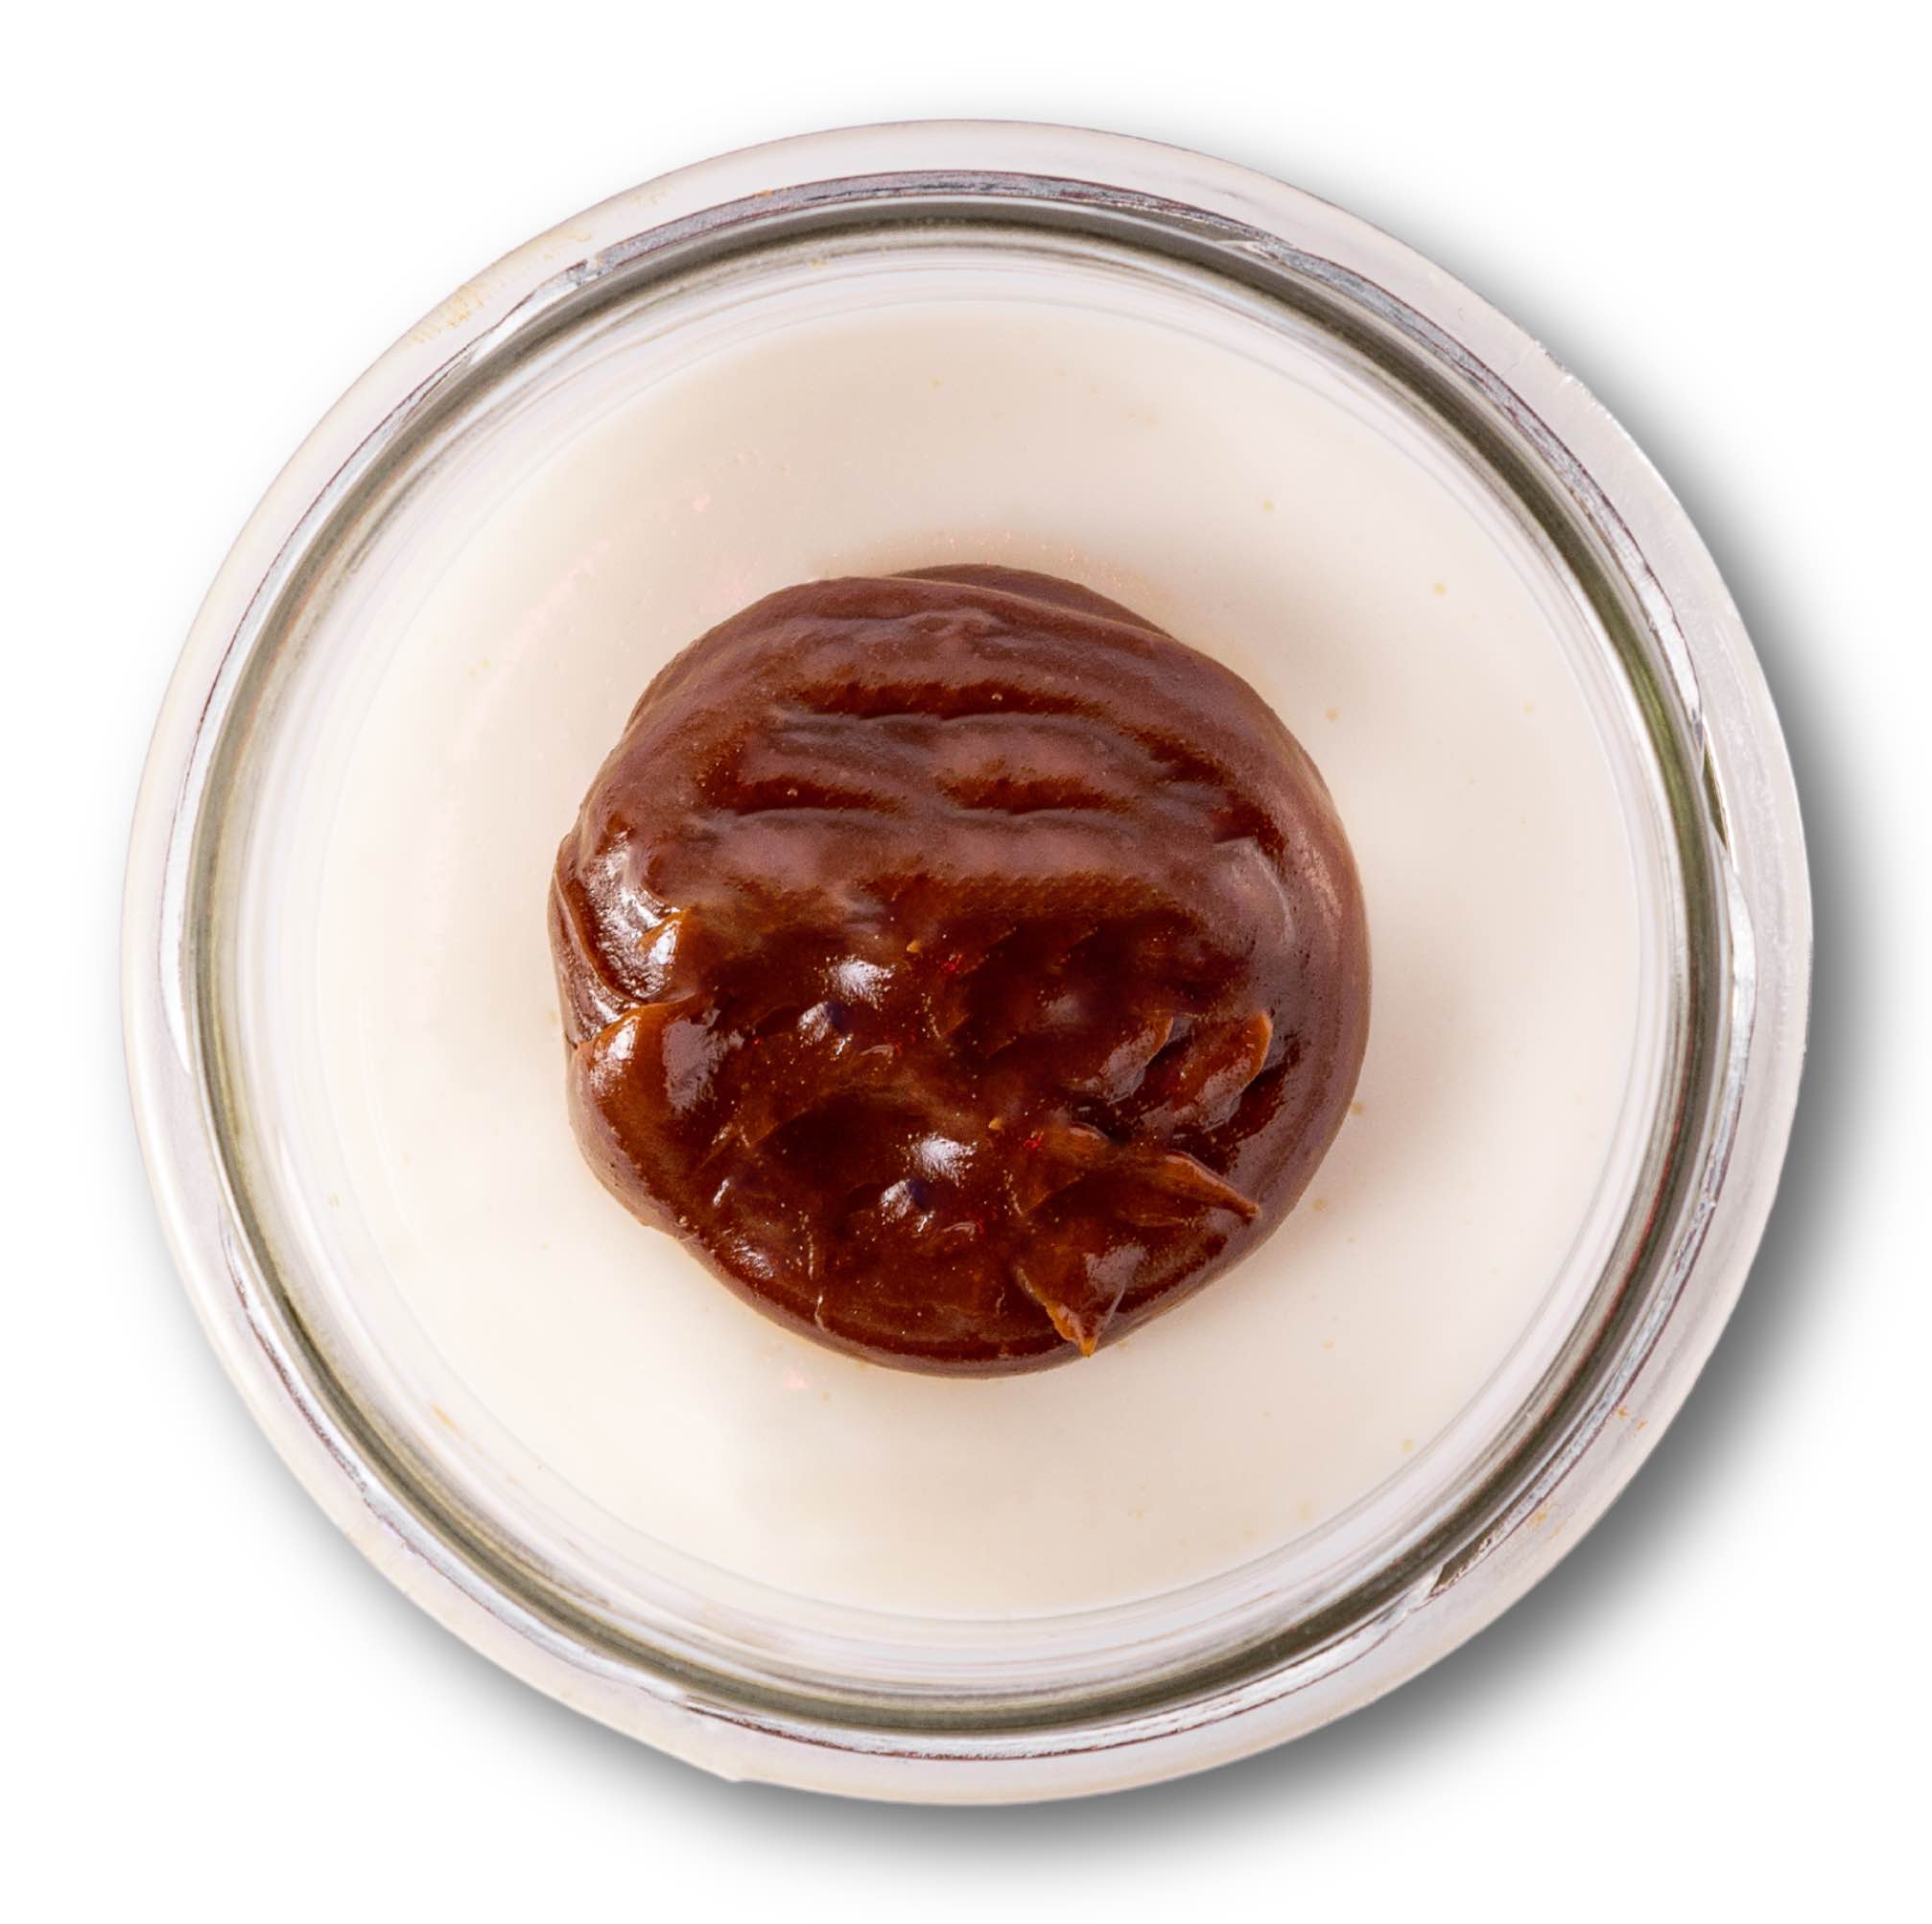 00202 – Cheesecake con dulce de leche